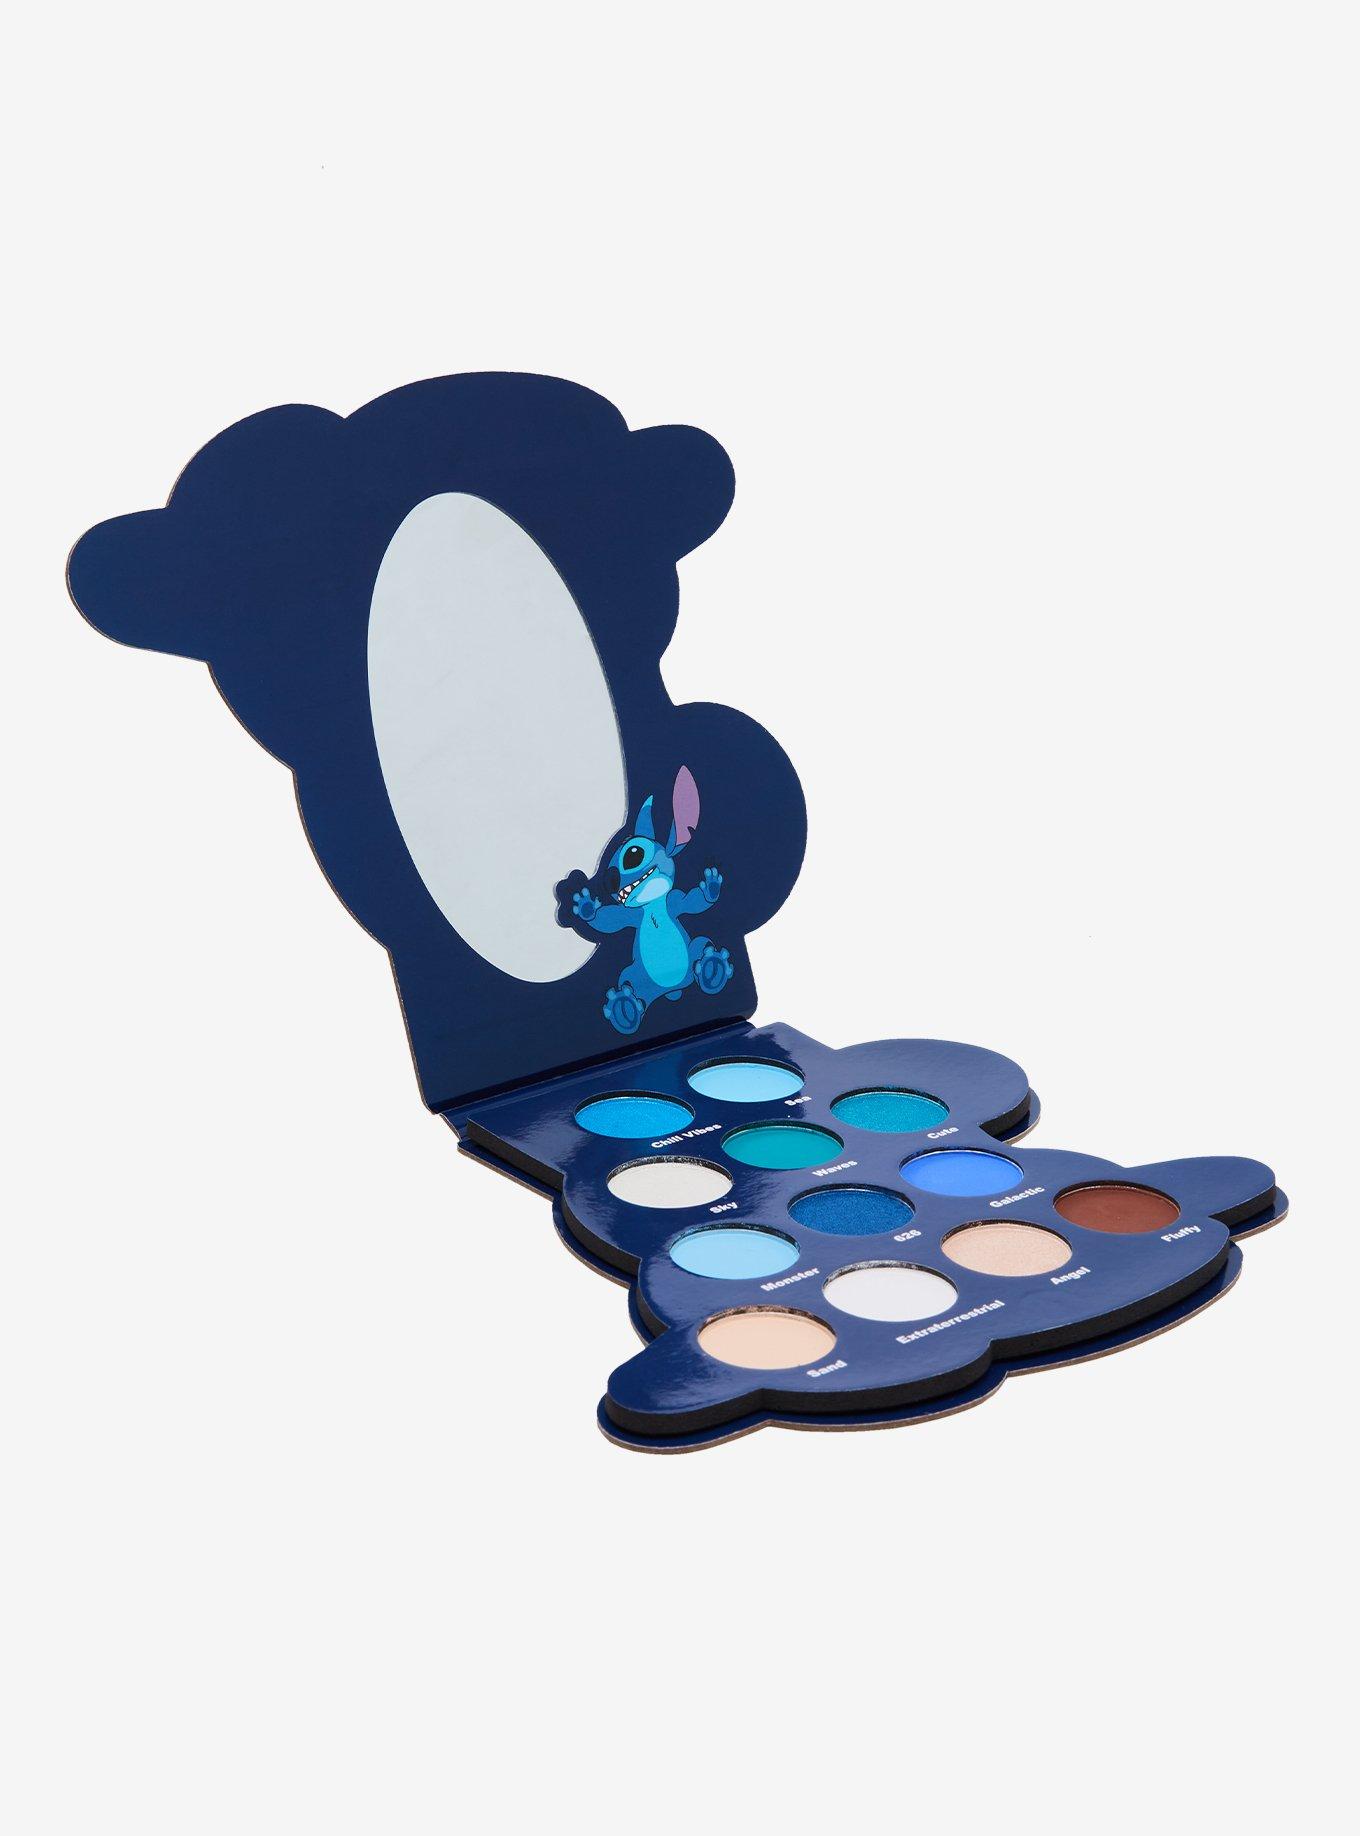 Disney - Palette yeux Lilo & Stitch - Palette de maquillage